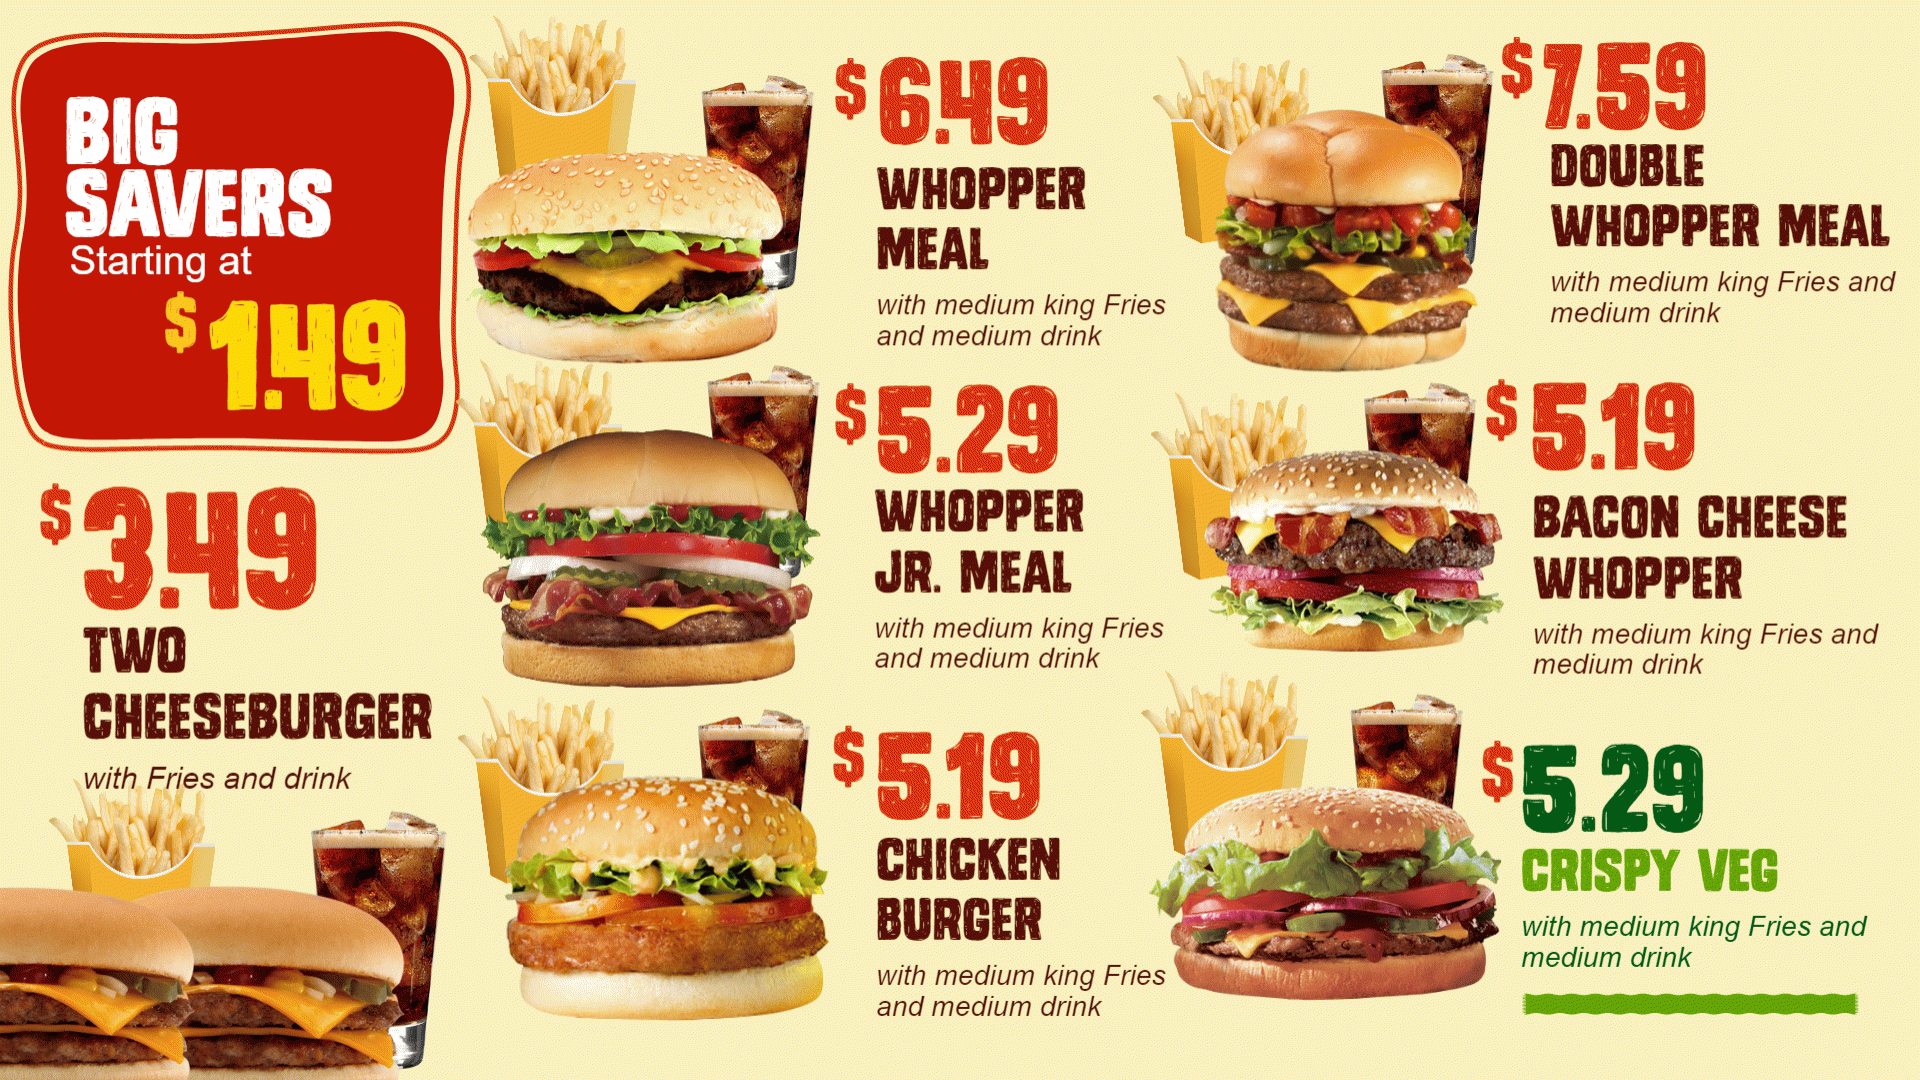 Burger menu playlist for digital signage for restaurants